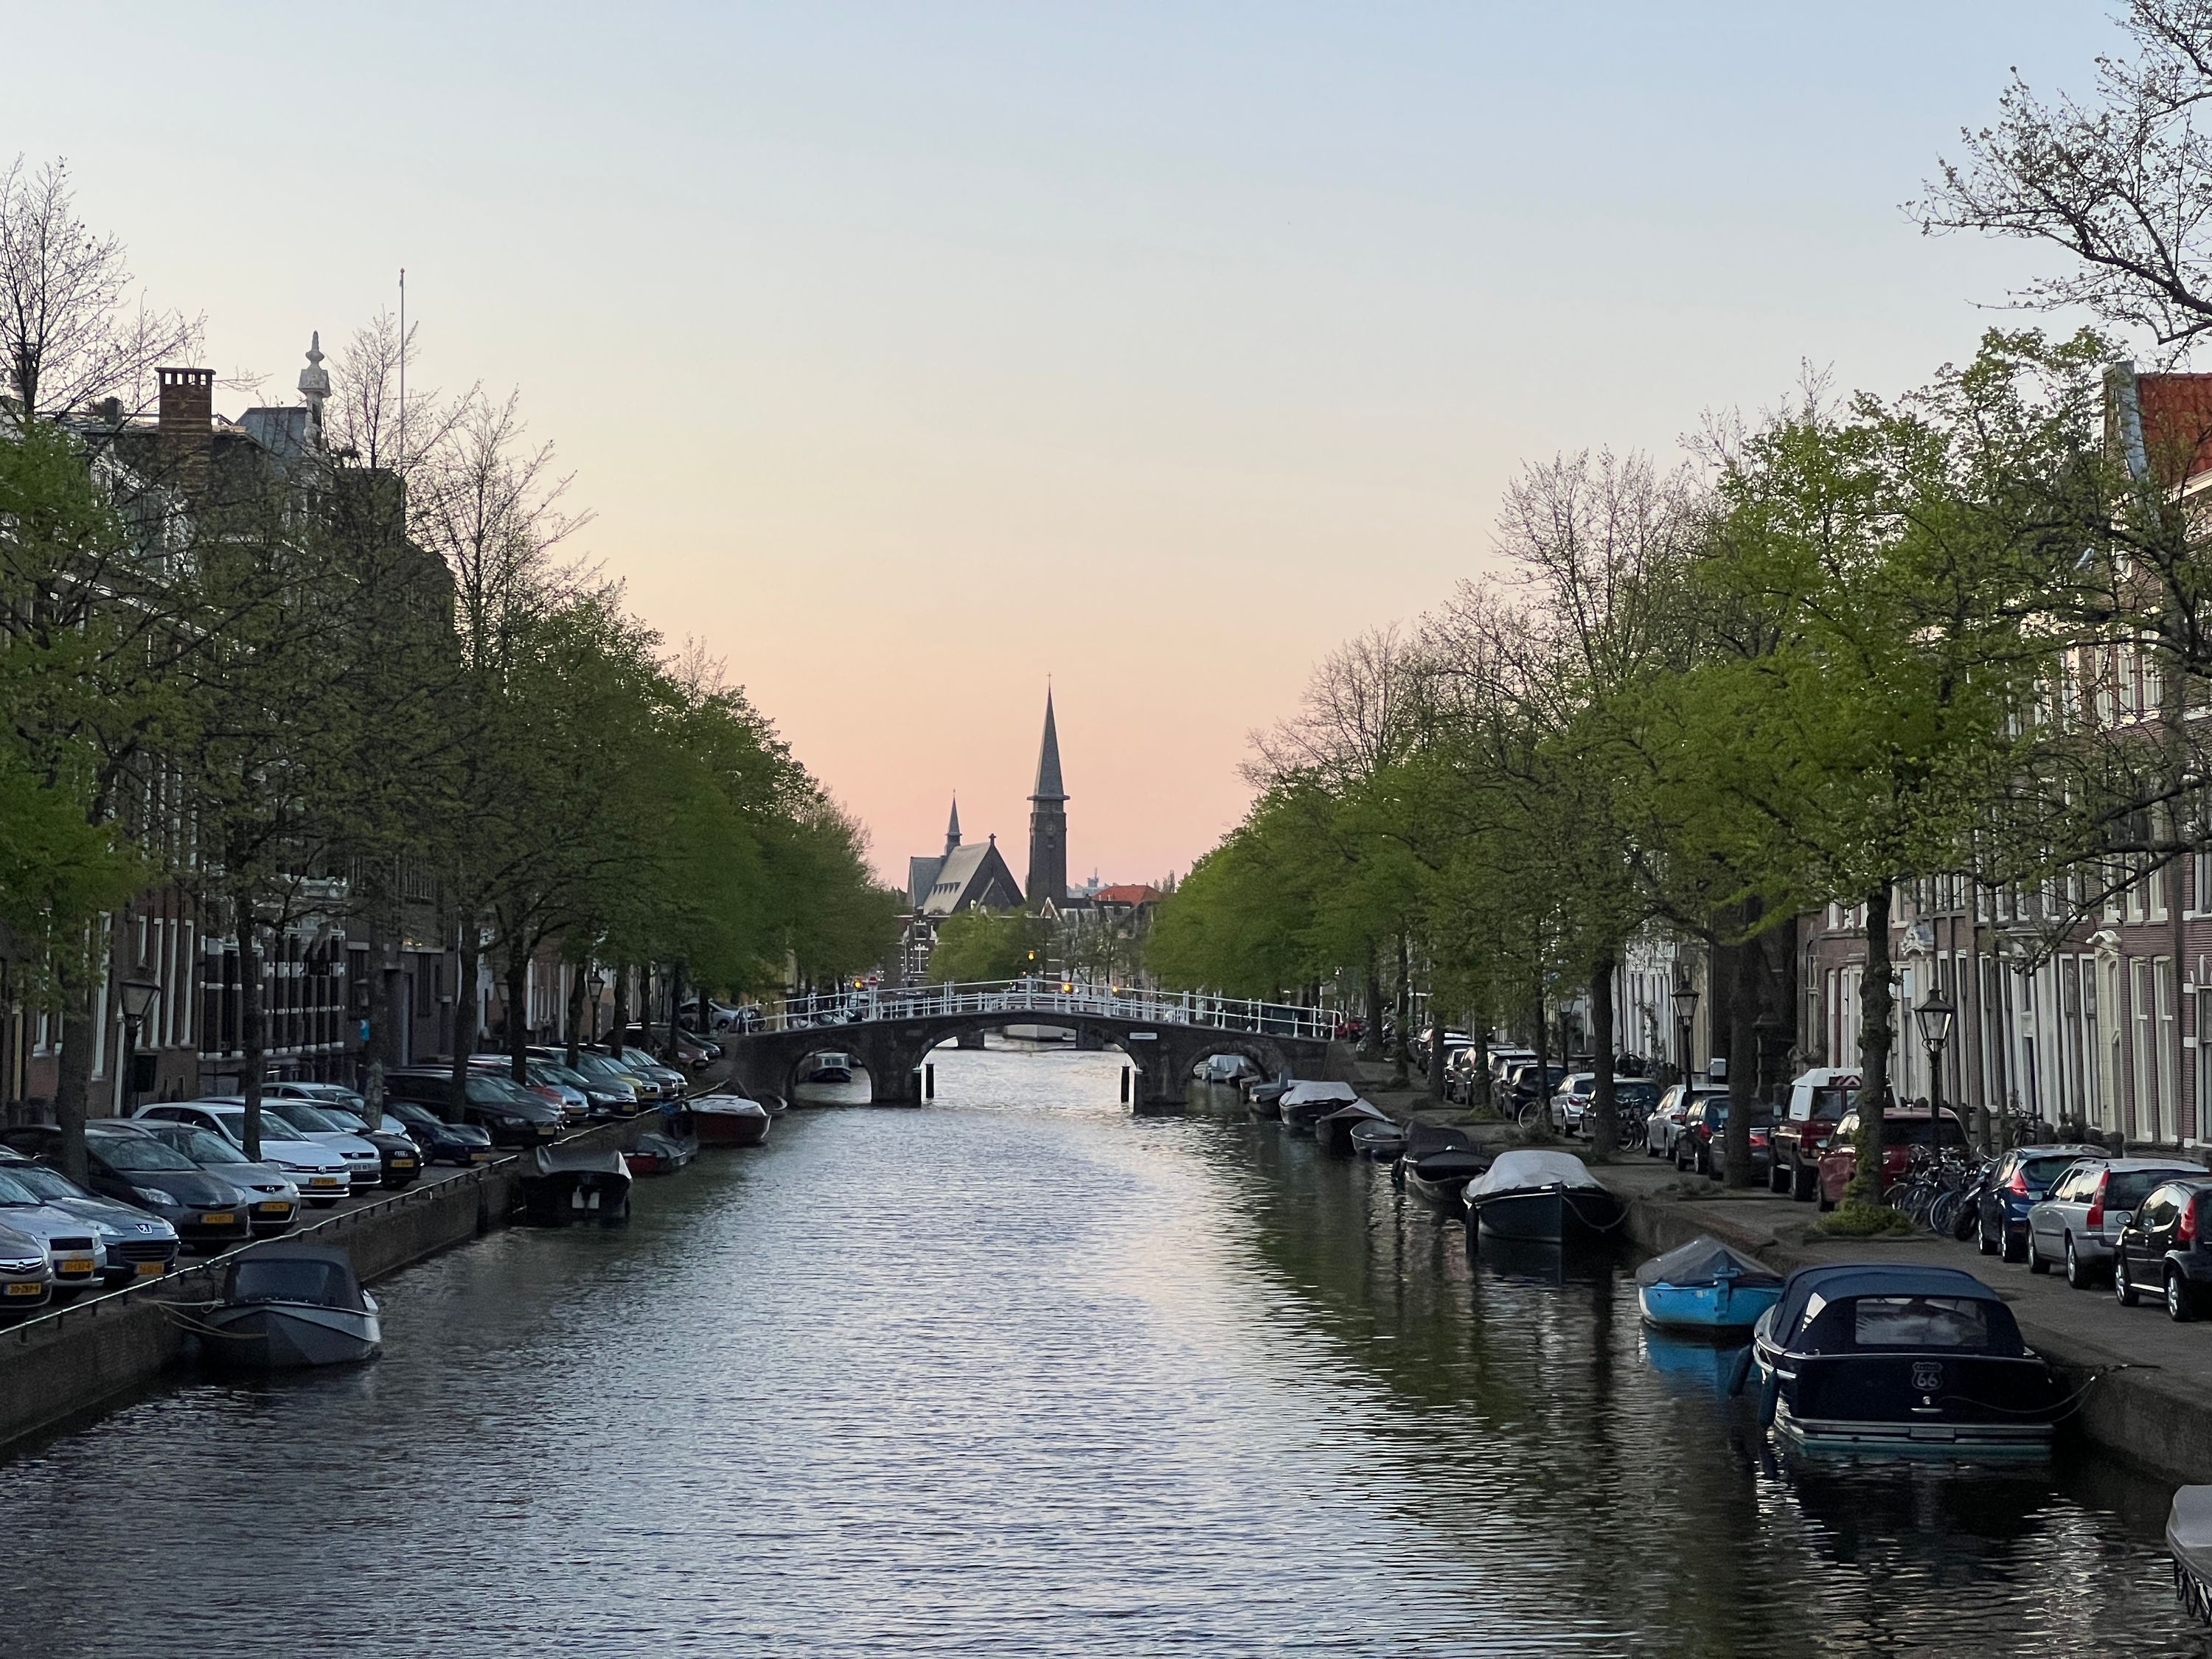 Canals in Leiden 2